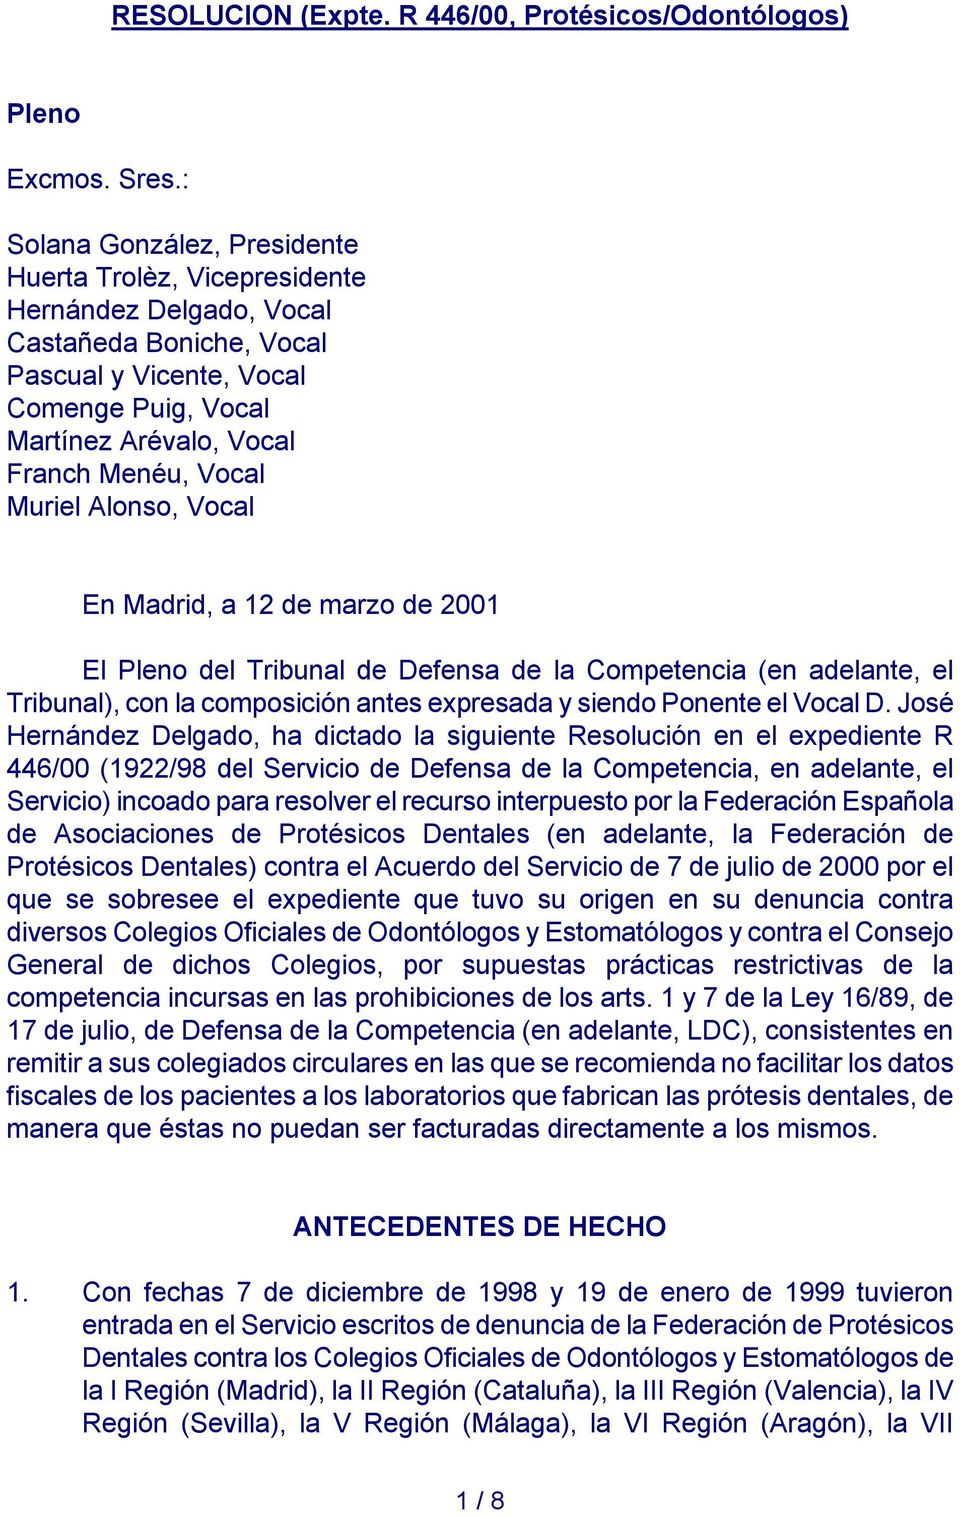 Muriel Alonso, Vocal En Madrid, a 12 de marzo de 2001 El Pleno del Tribunal de Defensa de la Competencia (en adelante, el Tribunal), con la composición antes expresada y siendo Ponente el Vocal D.